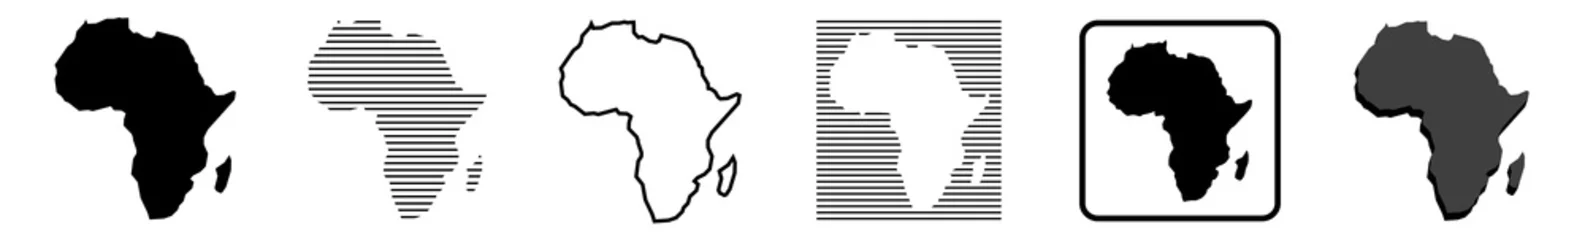 Foto op Canvas Afrika kaart   Afrikaanse grens   werelddeel   variaties © endstern